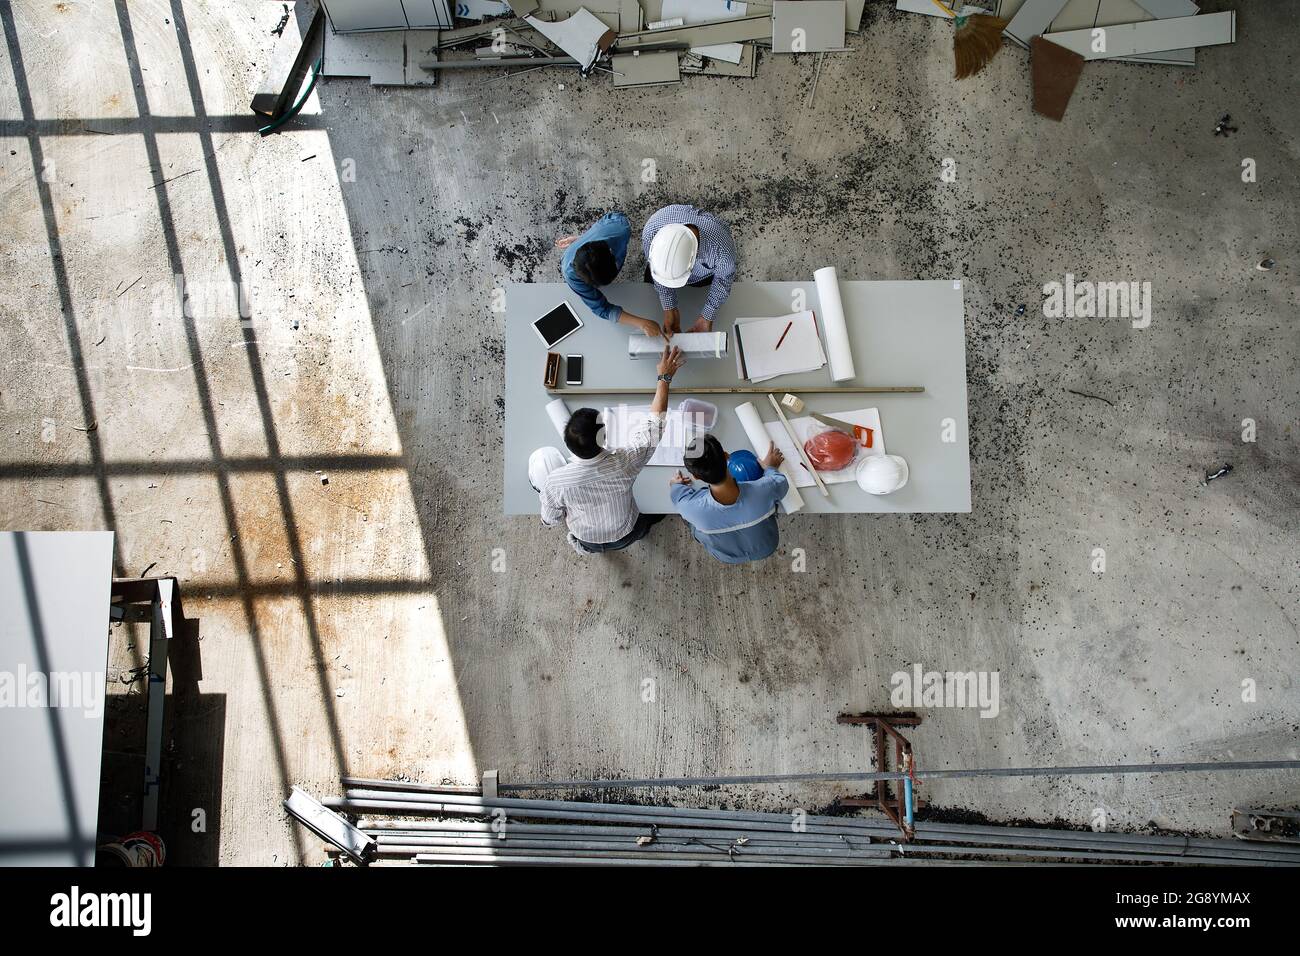 Une équipe d'ingénieurs composée de quatre personnes s'est associée pour examiner les matériaux de construction, pris sur une photo de haut-angle Banque D'Images